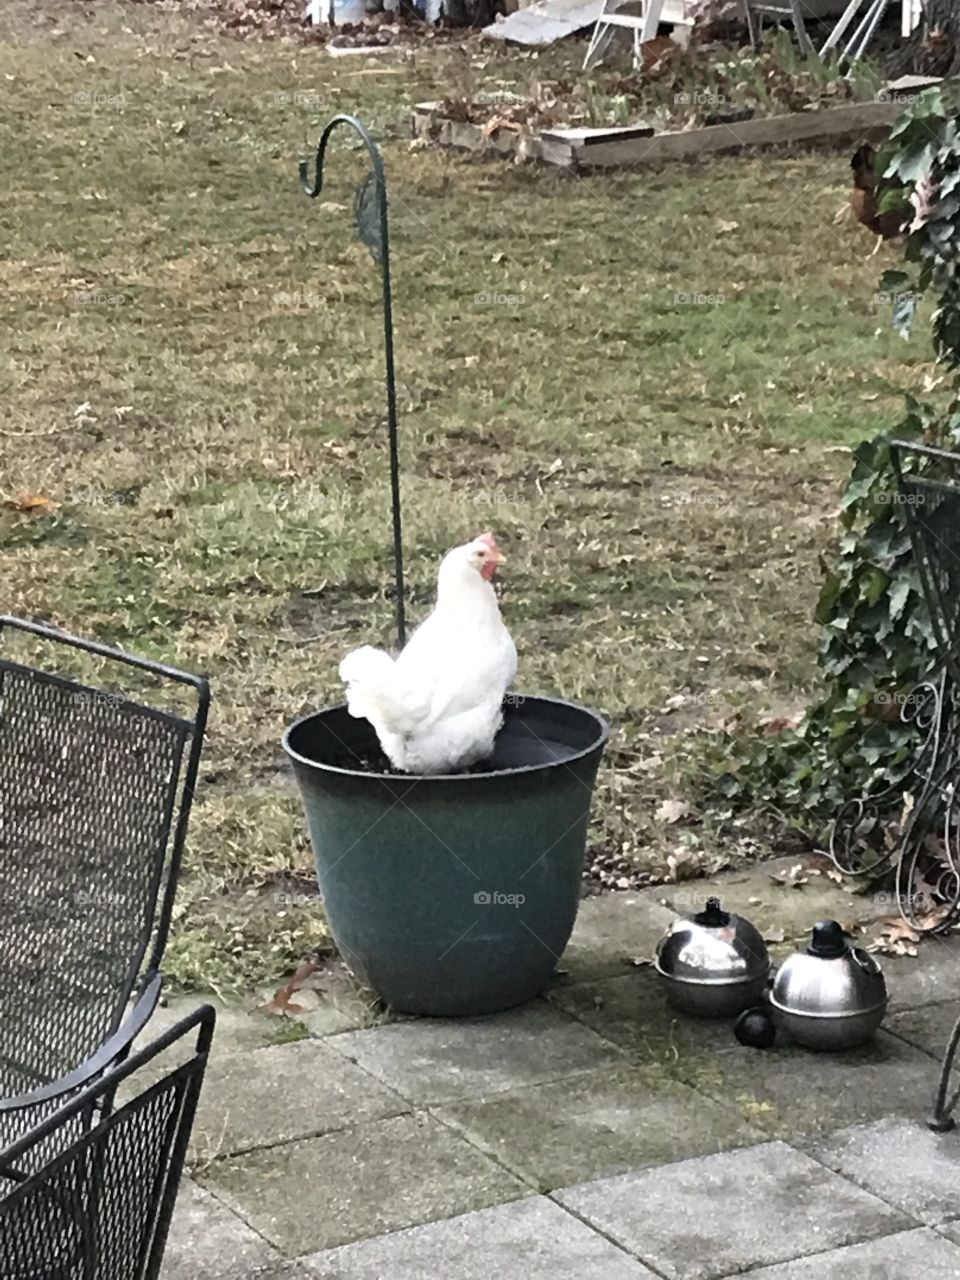 Hen in a pot